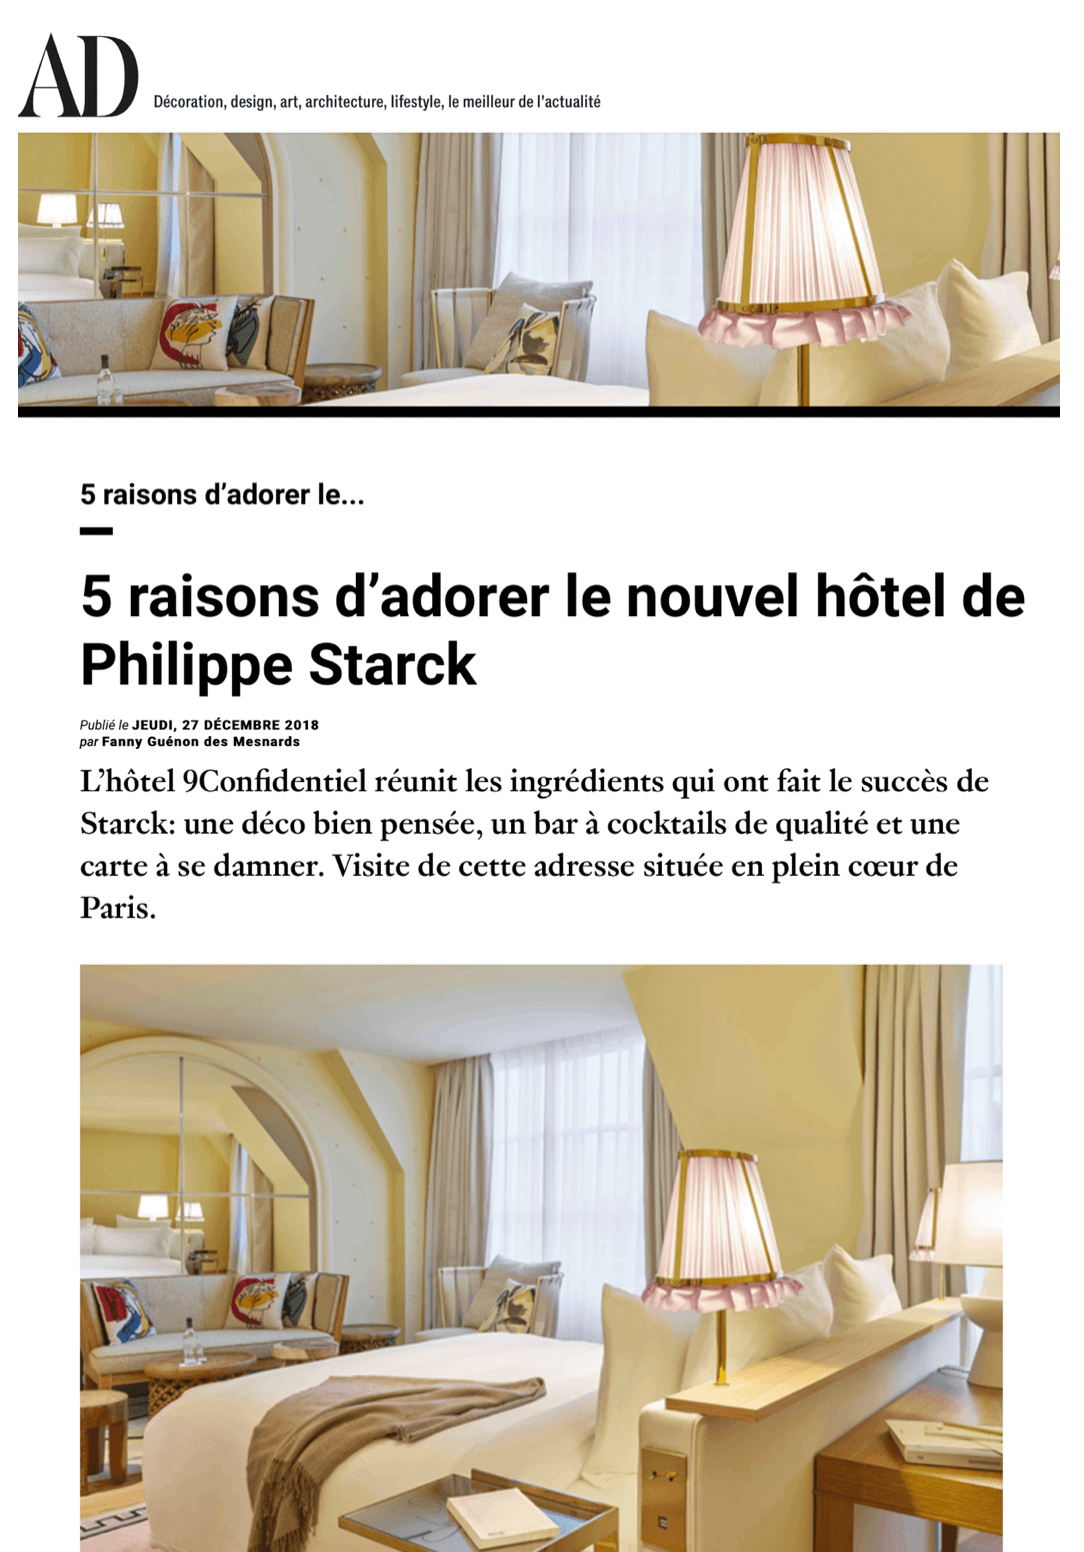 AD - 5 raisons d'adorer le 9 Confidentiel, le nouvel hôtel de Philippe Starck